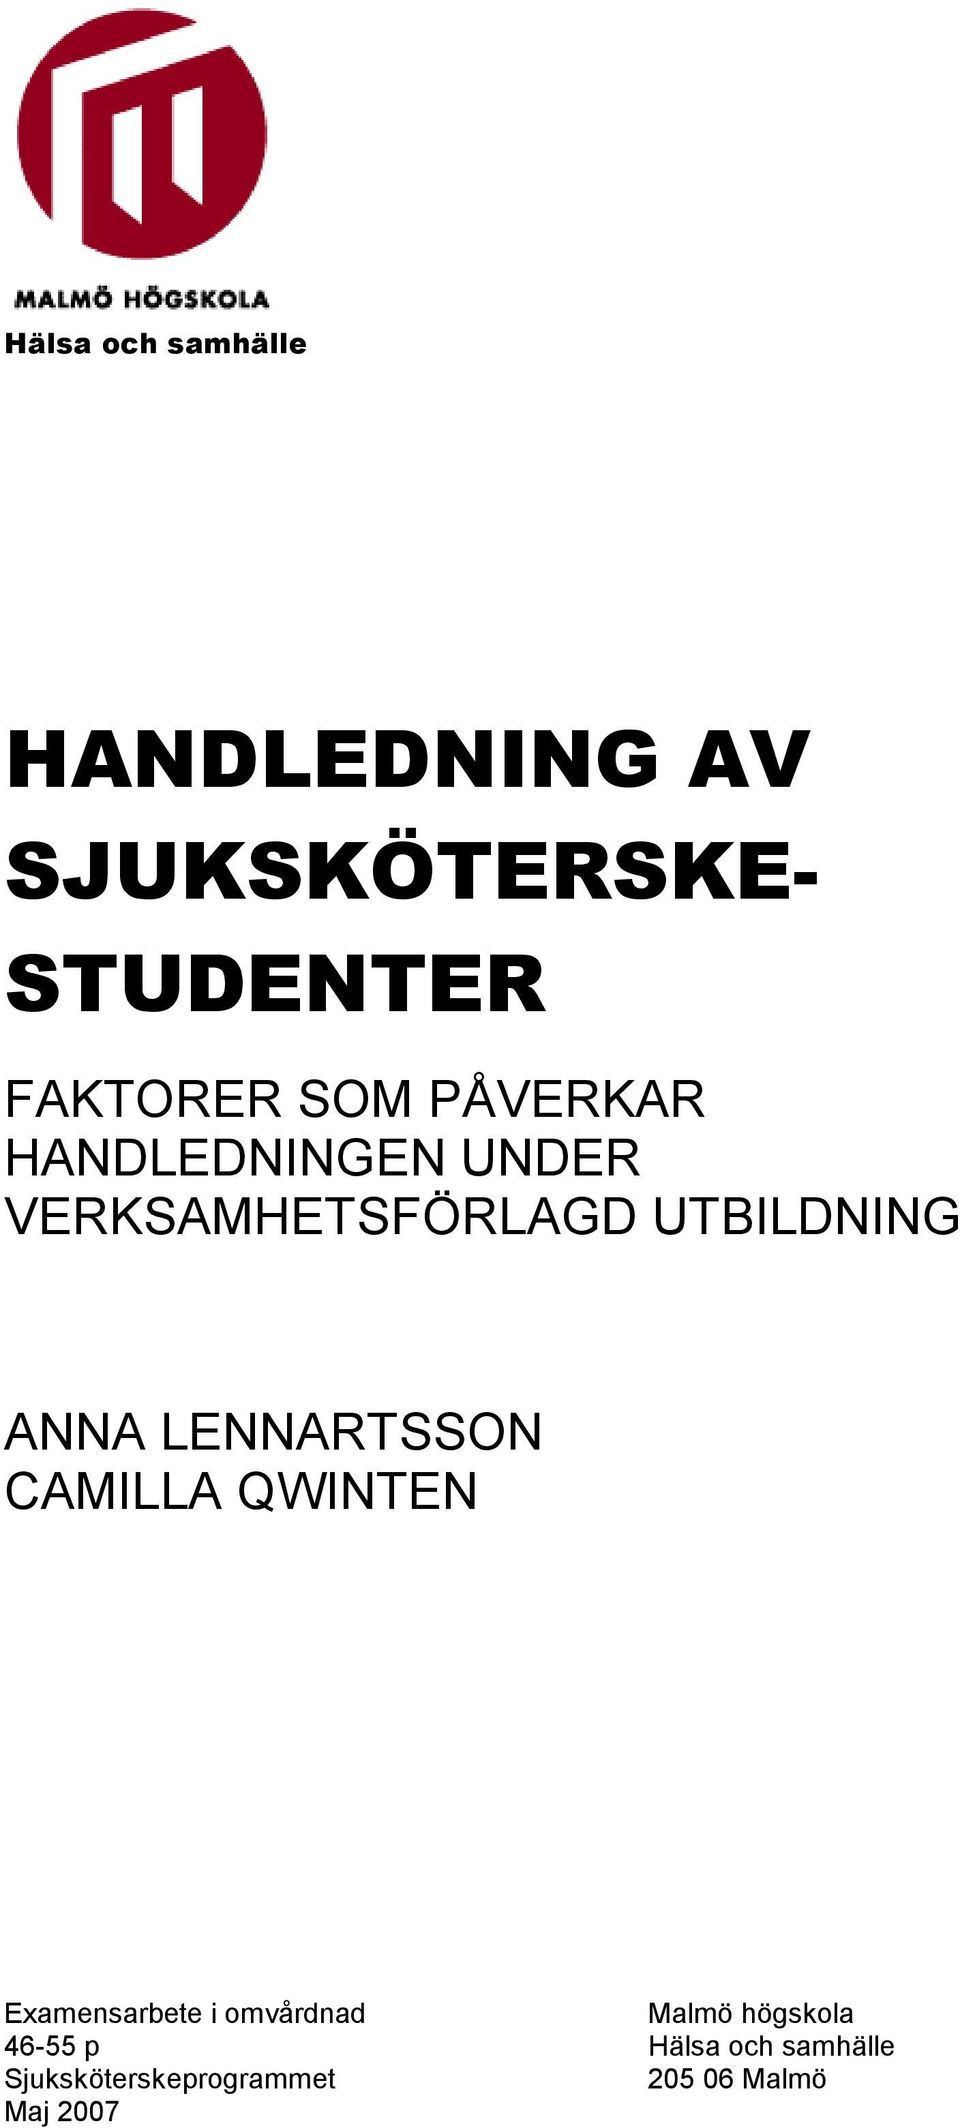 LENNARTSSON CAMILLA QWINTEN Examensarbete i omvårdnad Malmö högskola